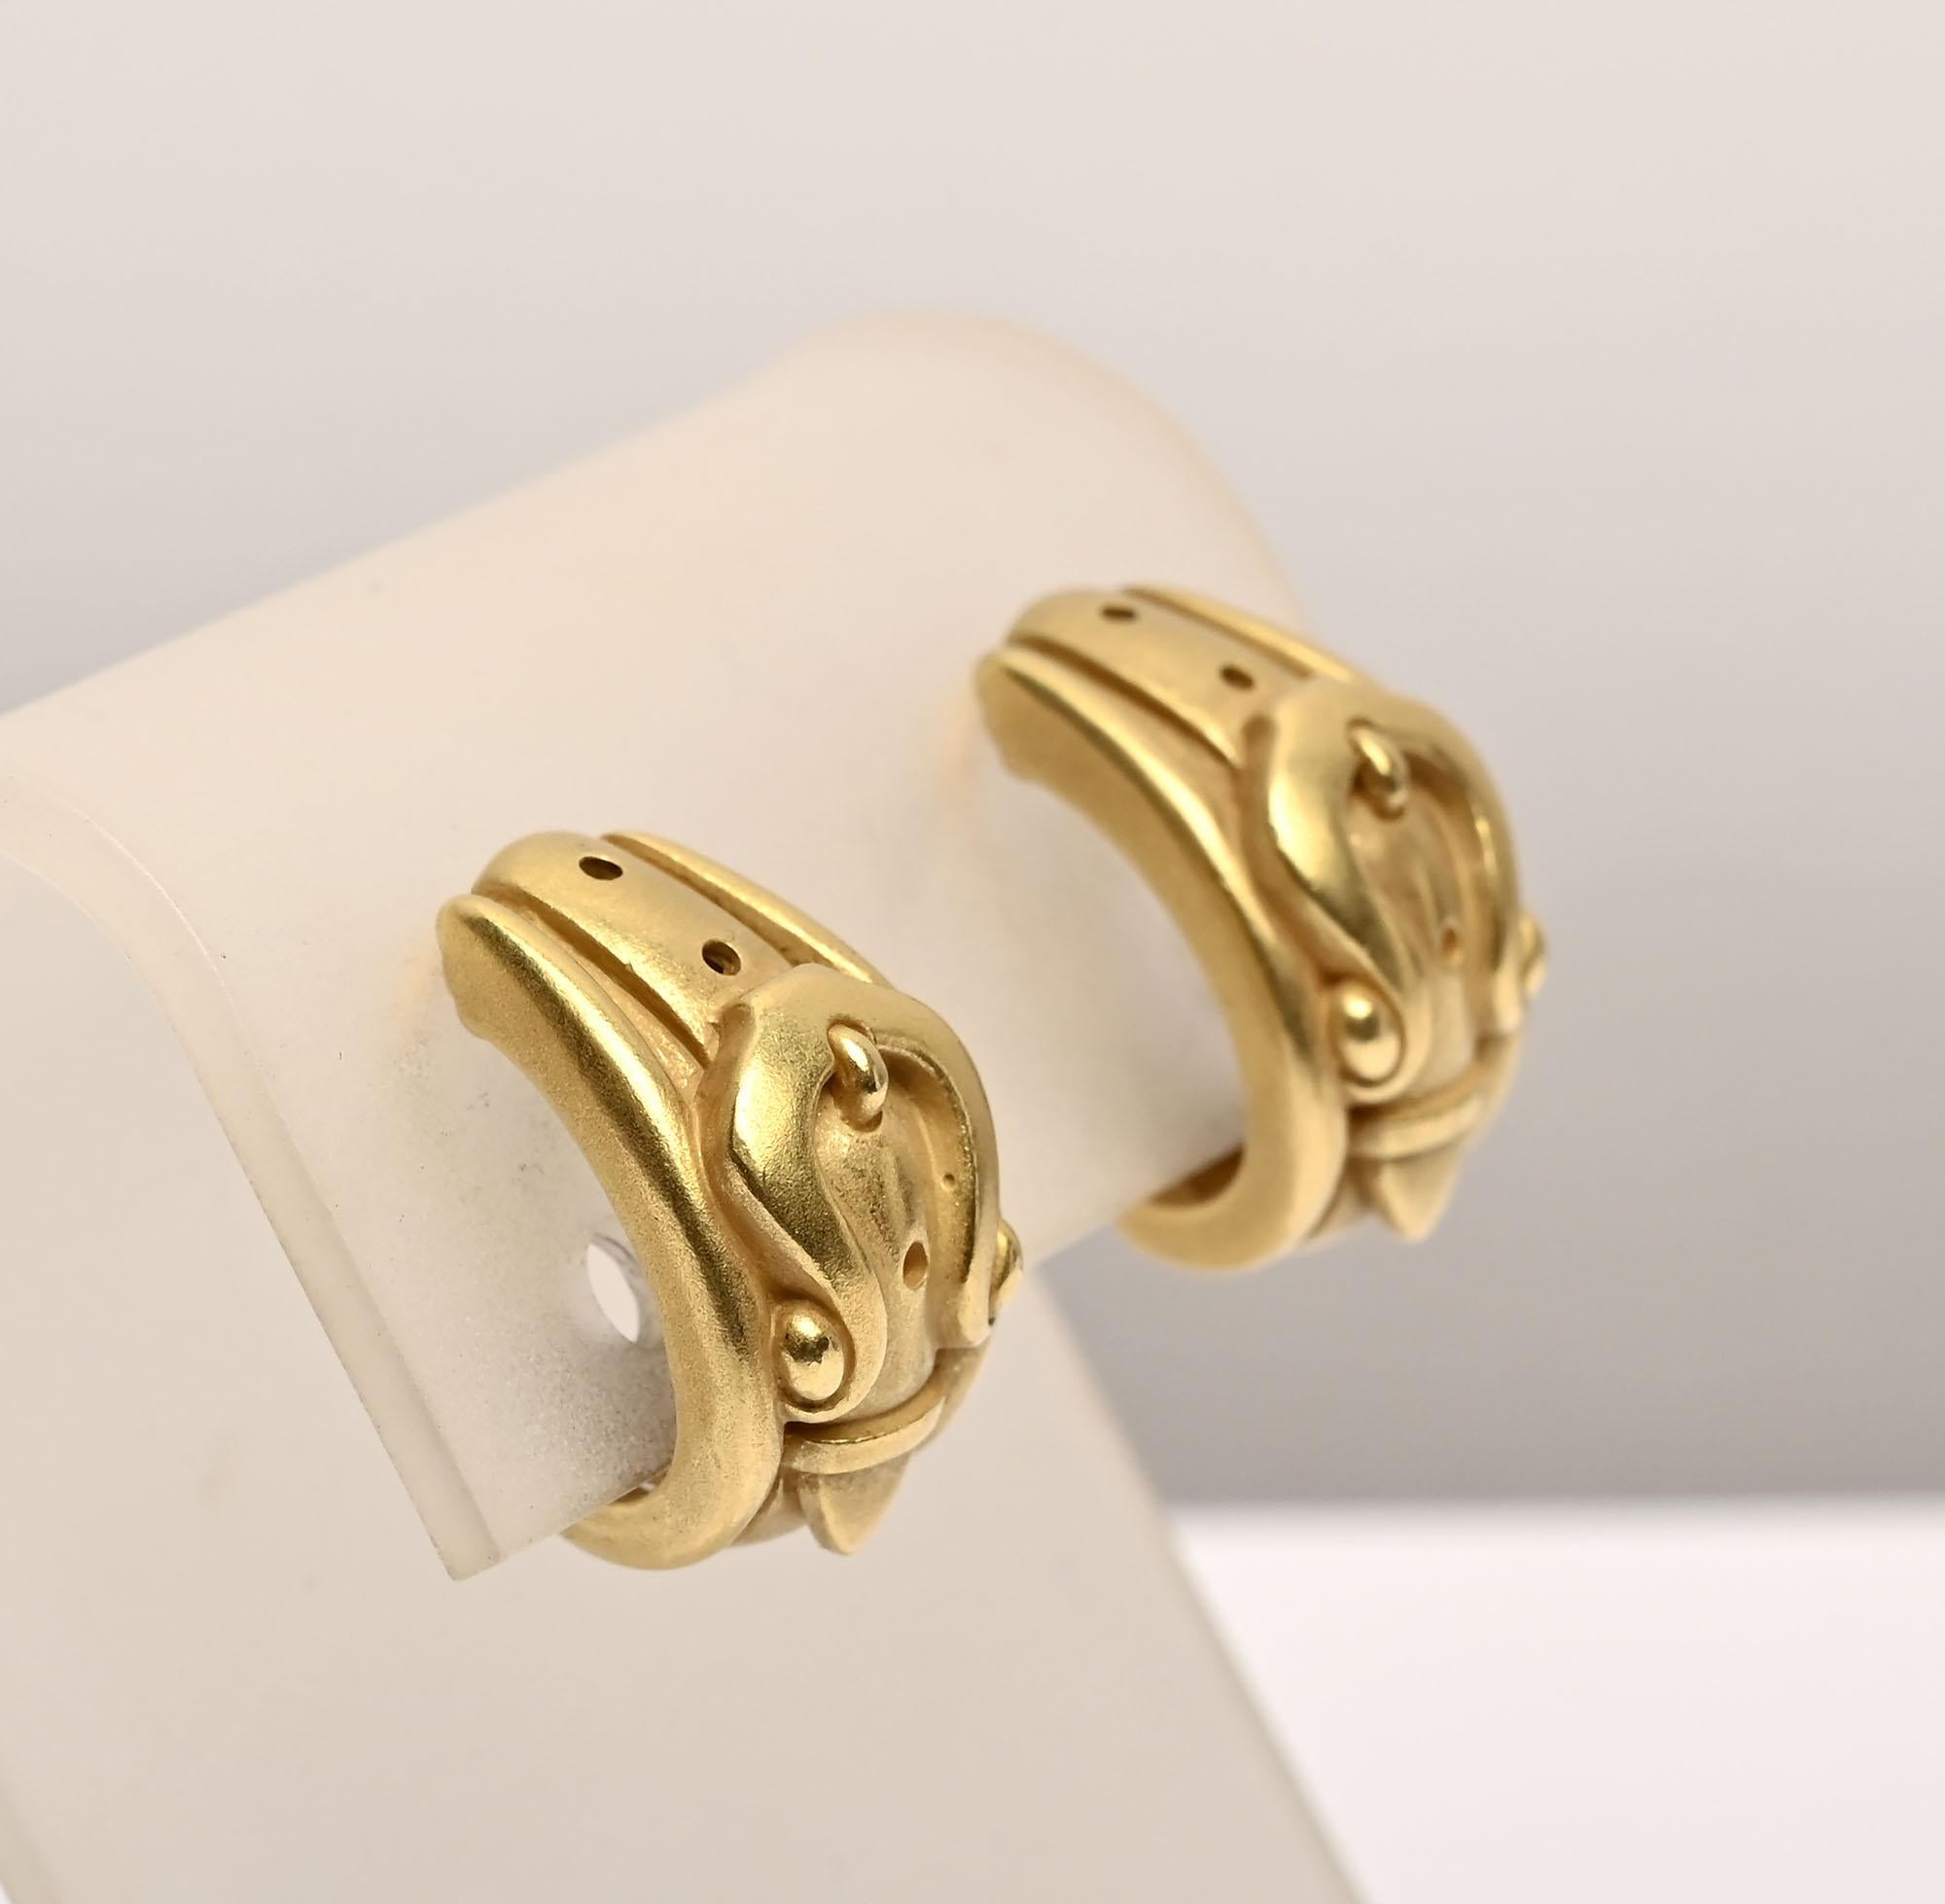 Boucles d'oreilles insolites en or de Barry KIESSTEIN-CORD. Ils  se présentent sous la forme d'une boucle, réalisée dans l'or 18 carats verdâtre qui a fait sa réputation. Les détails des boucles d'oreilles ont un bel effet sculptural. Ils sont datés